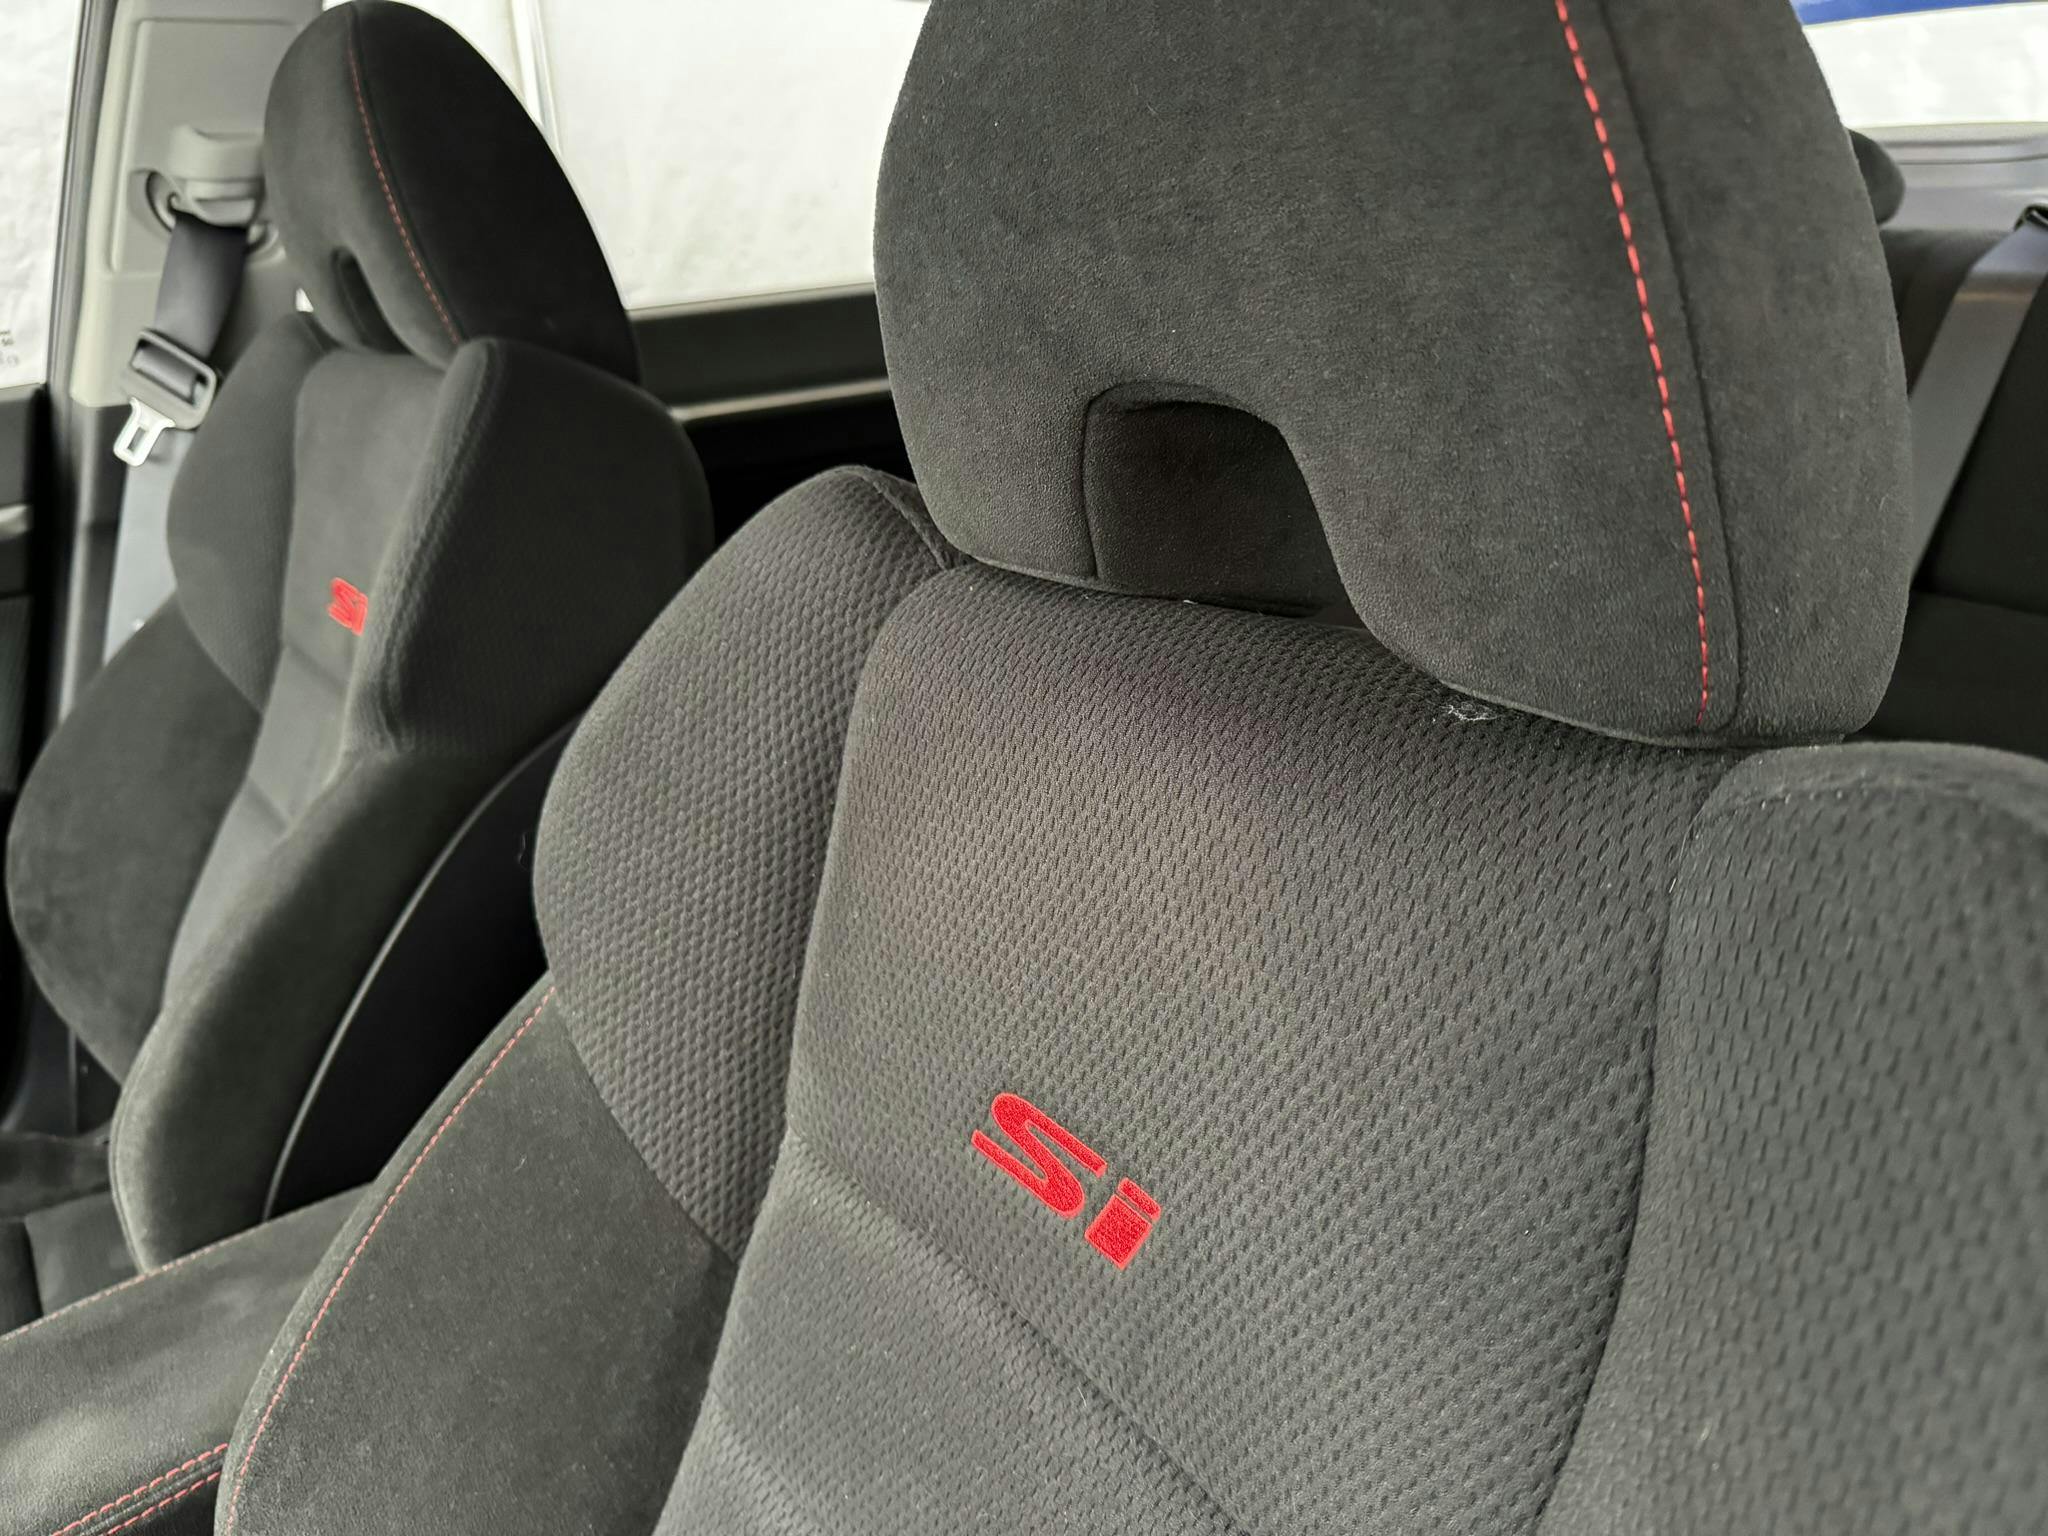 2008 Honda Civic Mugen Si seat detail